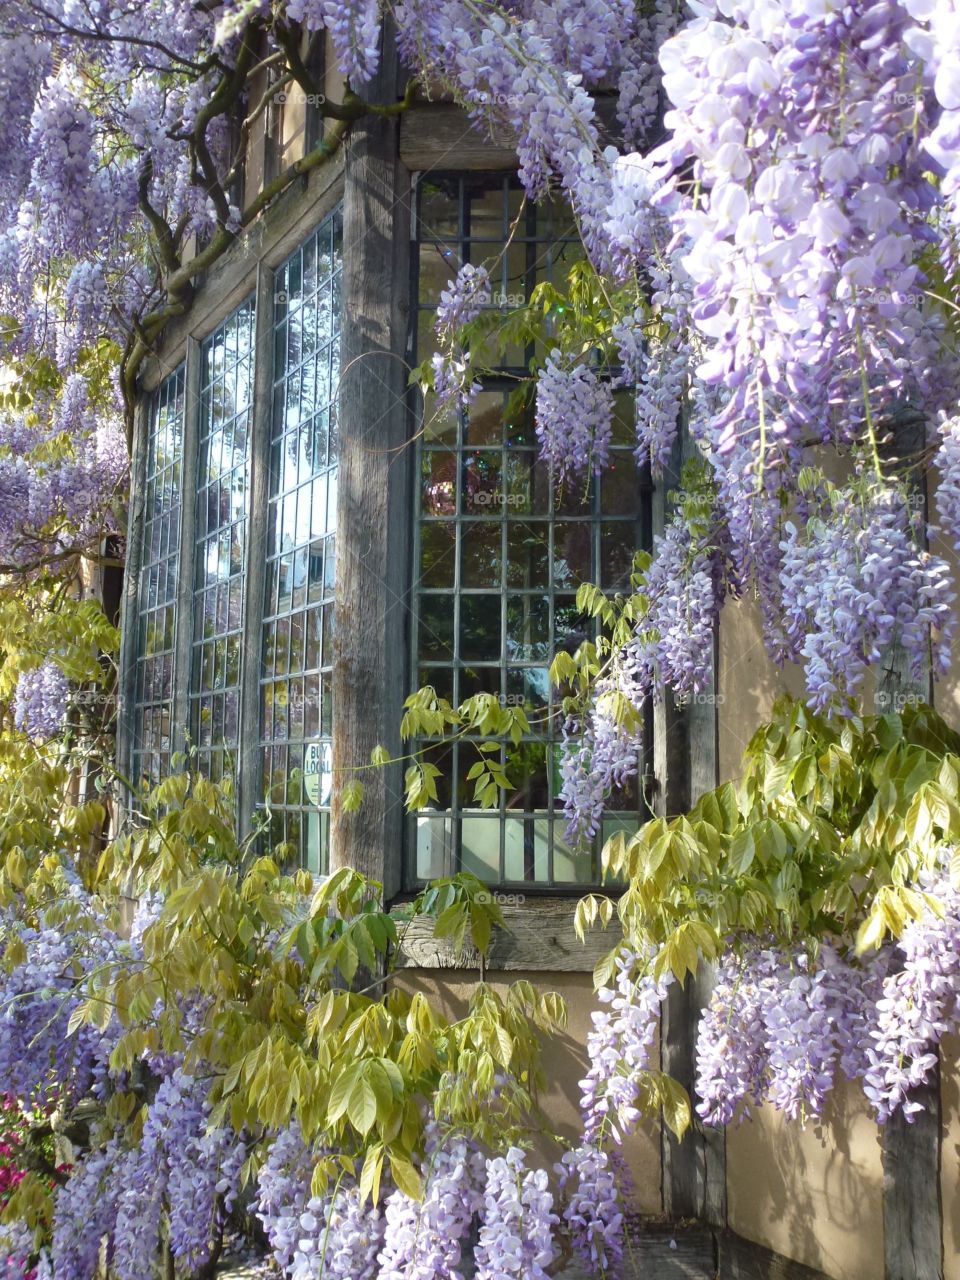 Window with wisteria sinesis